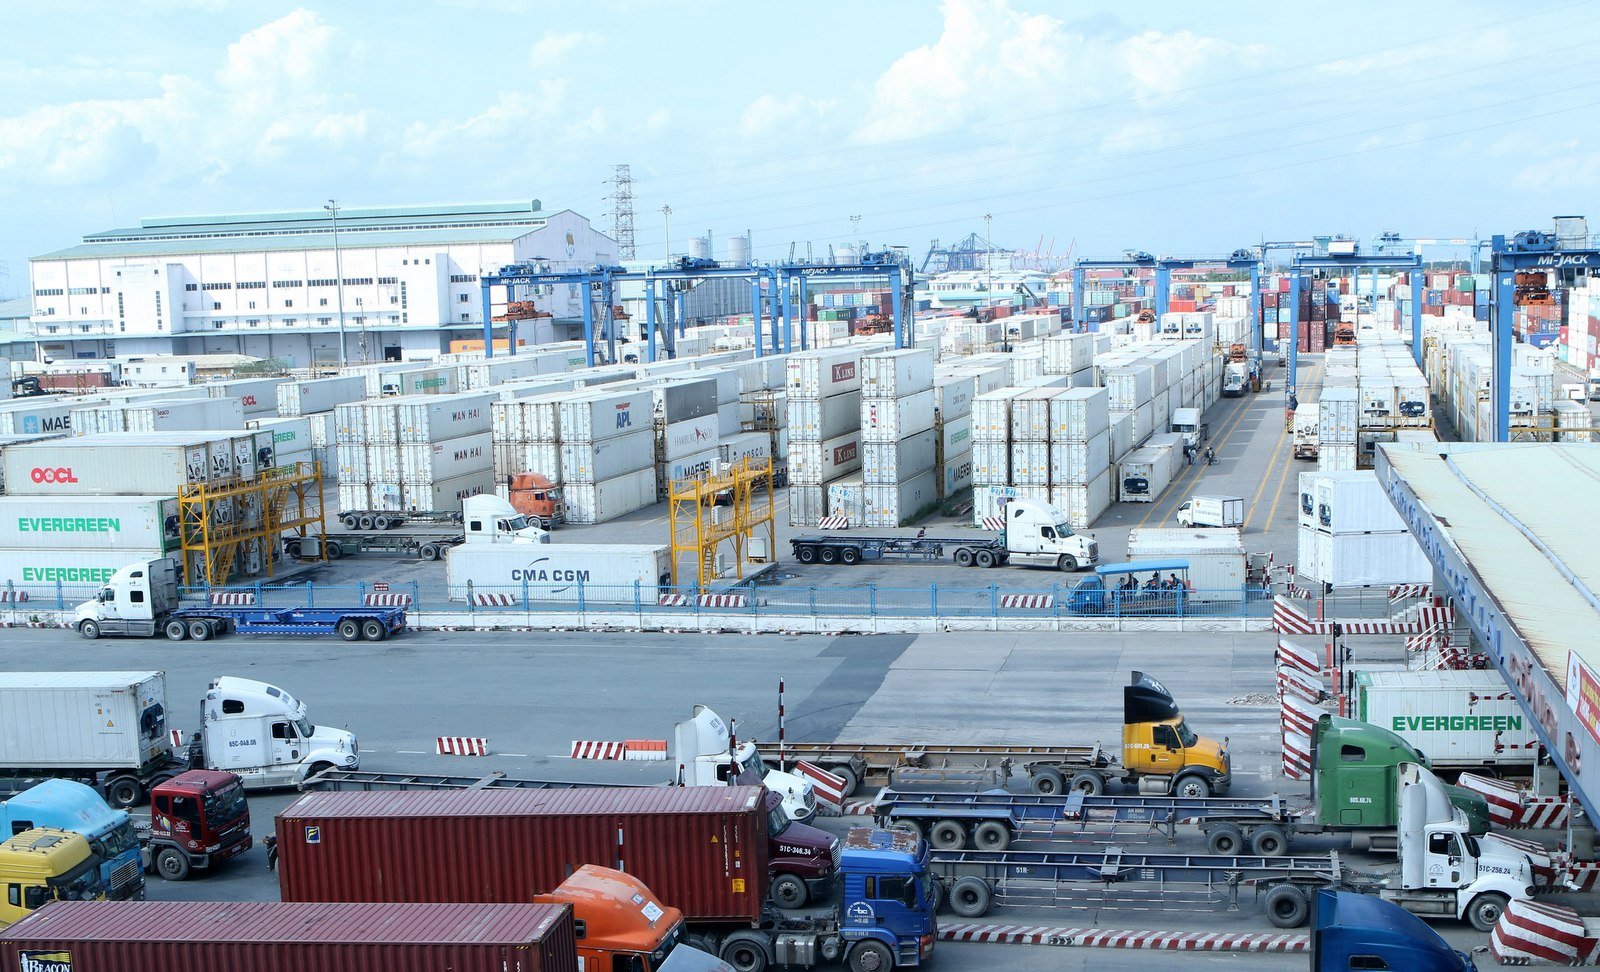 Để thu hút được hàng container xuất nhập khẩu, nhiều cảng đã đua nhau “phá giá” để giành khách hàng